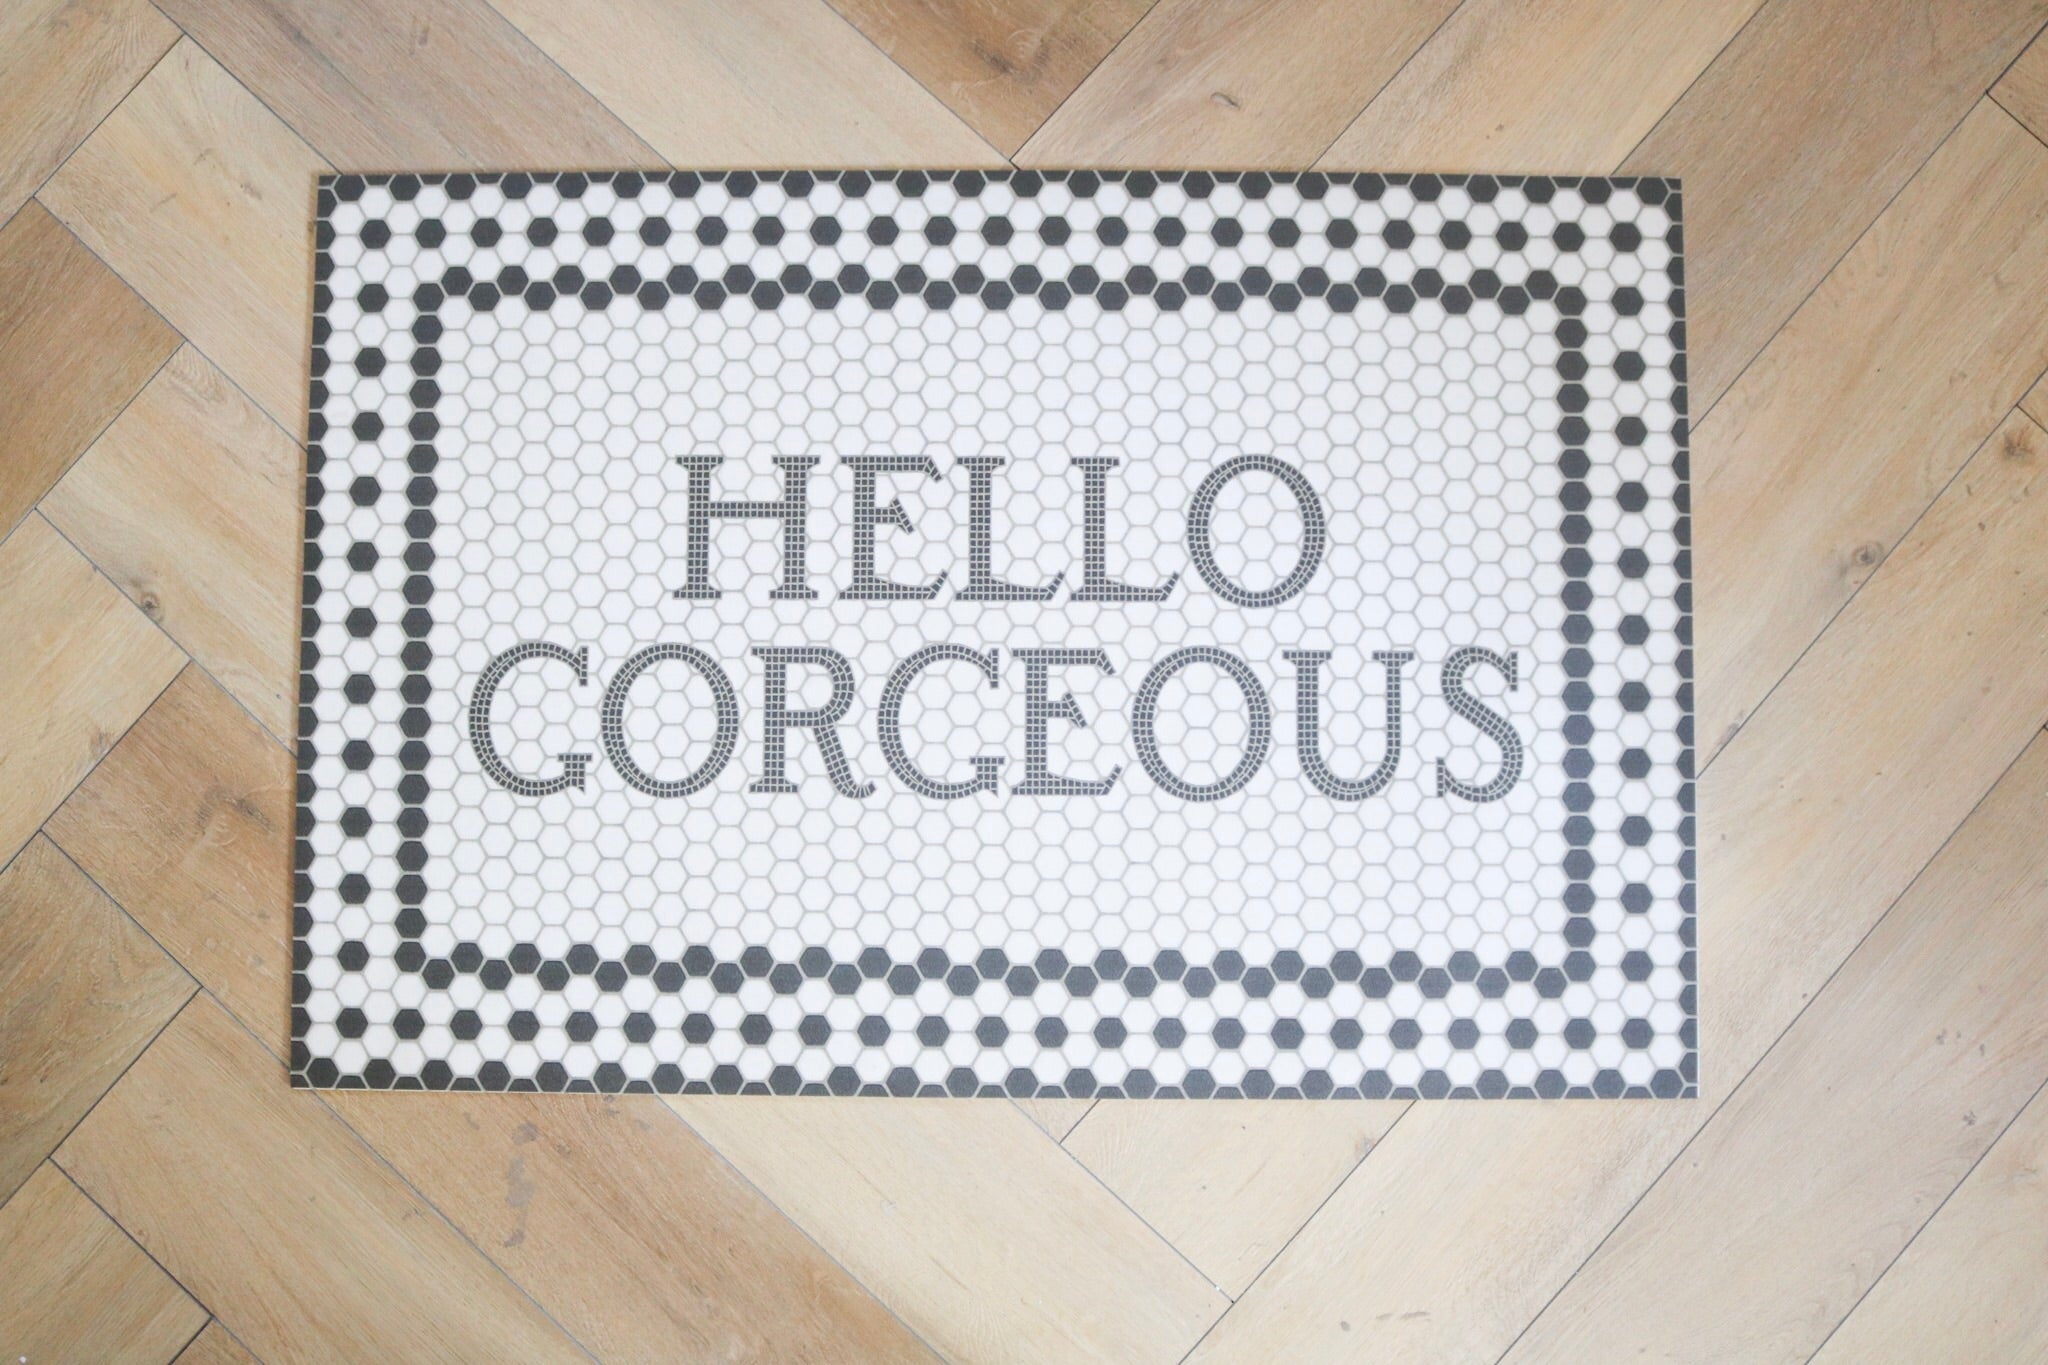 Quote Doormat, Welcome Doormat, Hello Gorgeous Doormat